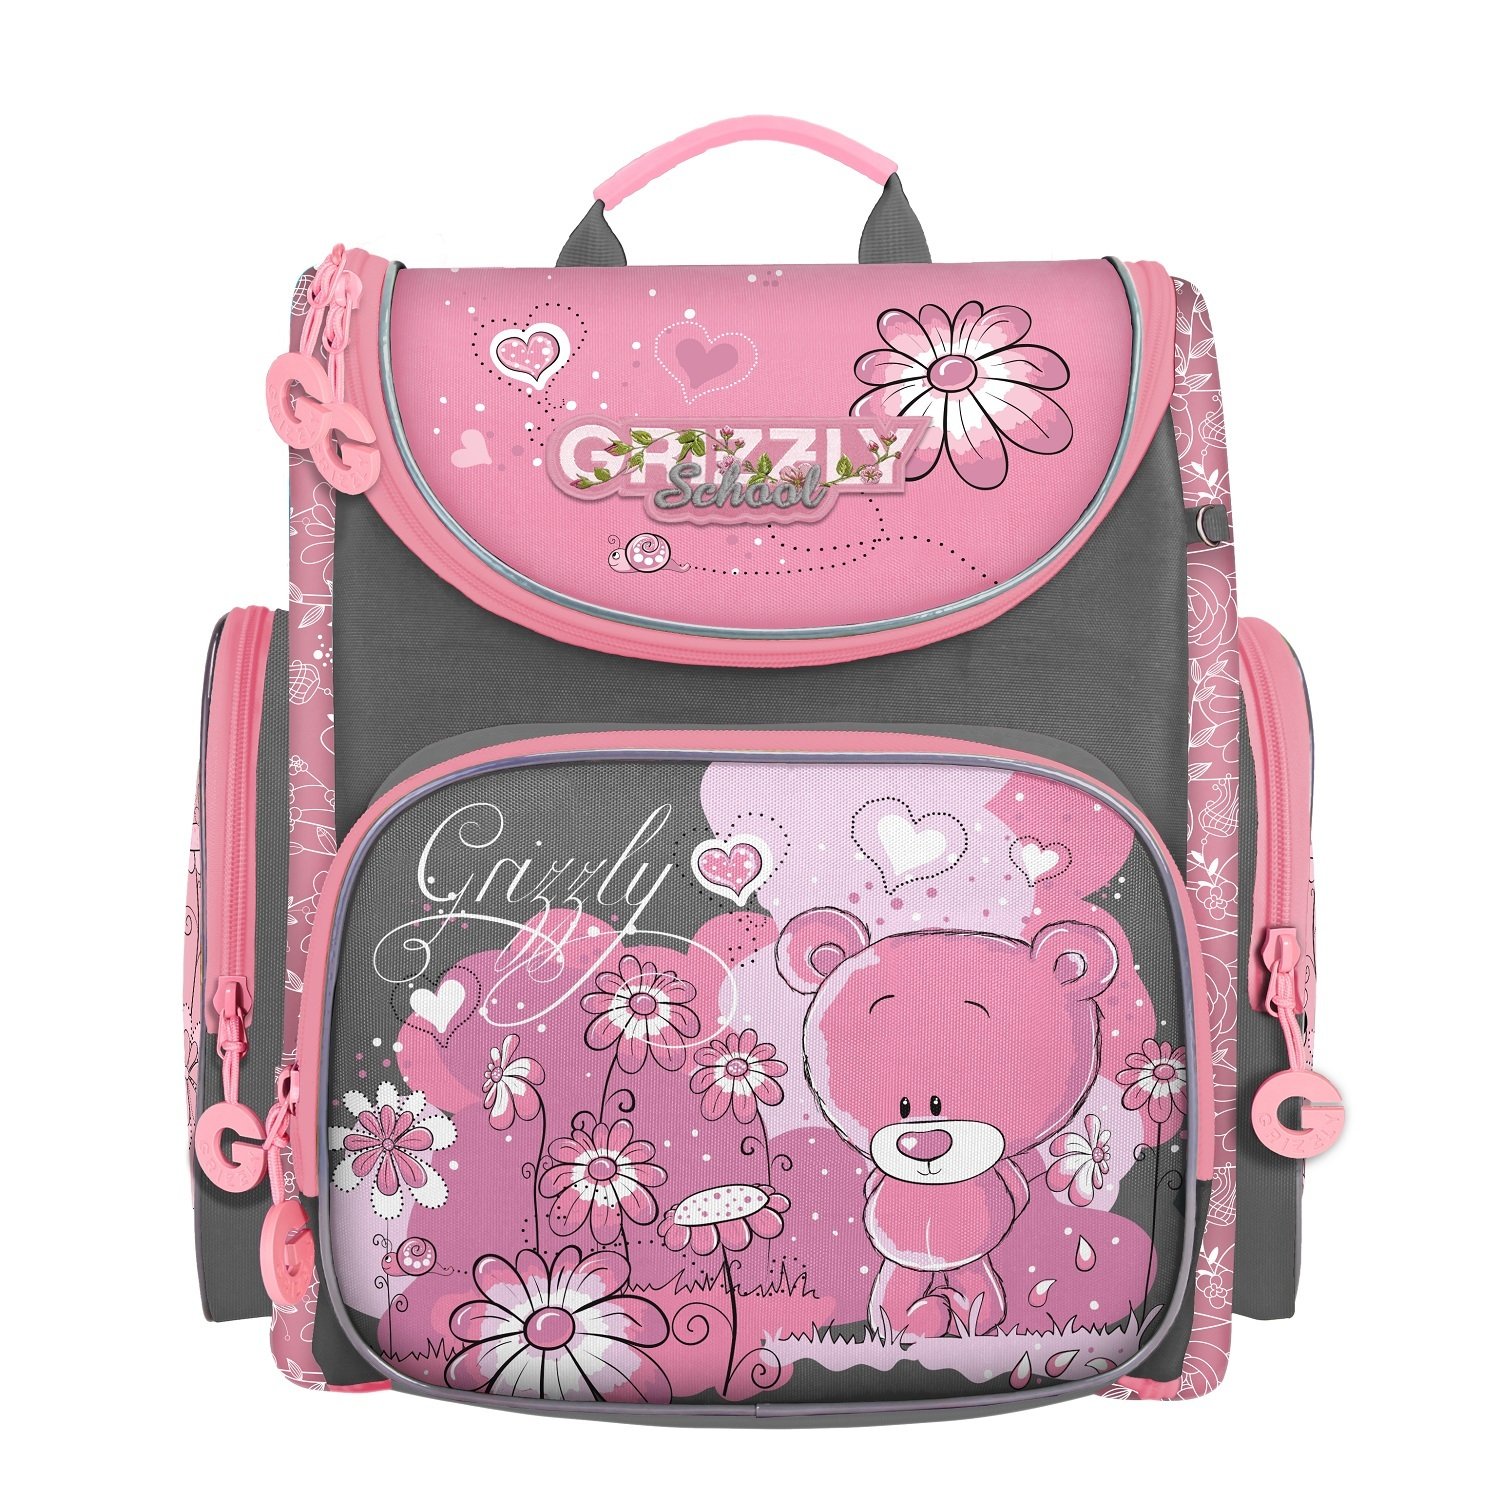 Куплю портфель для девочки. Рюкзак Grizzly детский розовый. Рюкзак школьный Grizzly мишенька серый-розовый rar-080-11/1. Grizzly рюкзак мишка. Рюкзак школьный для девочки 1 класс Grizzly.